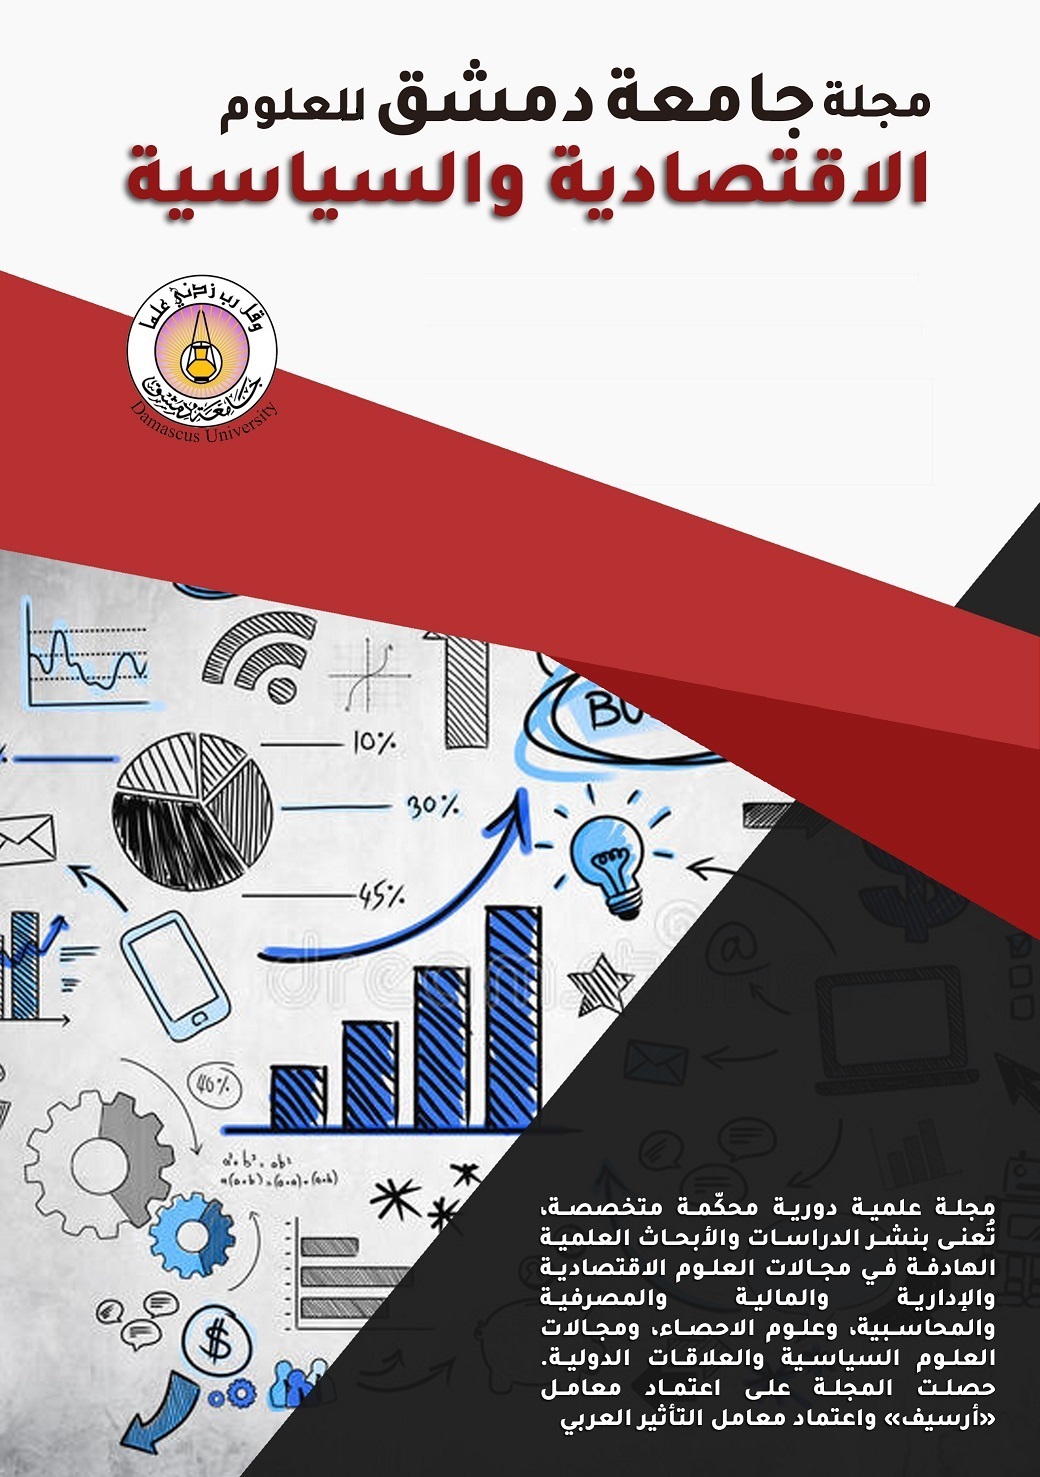 					معاينة مجلد 35 عدد 3 (2019): مجلة جامعة دمشق للعلوم الاقتصادية والسياسية
				